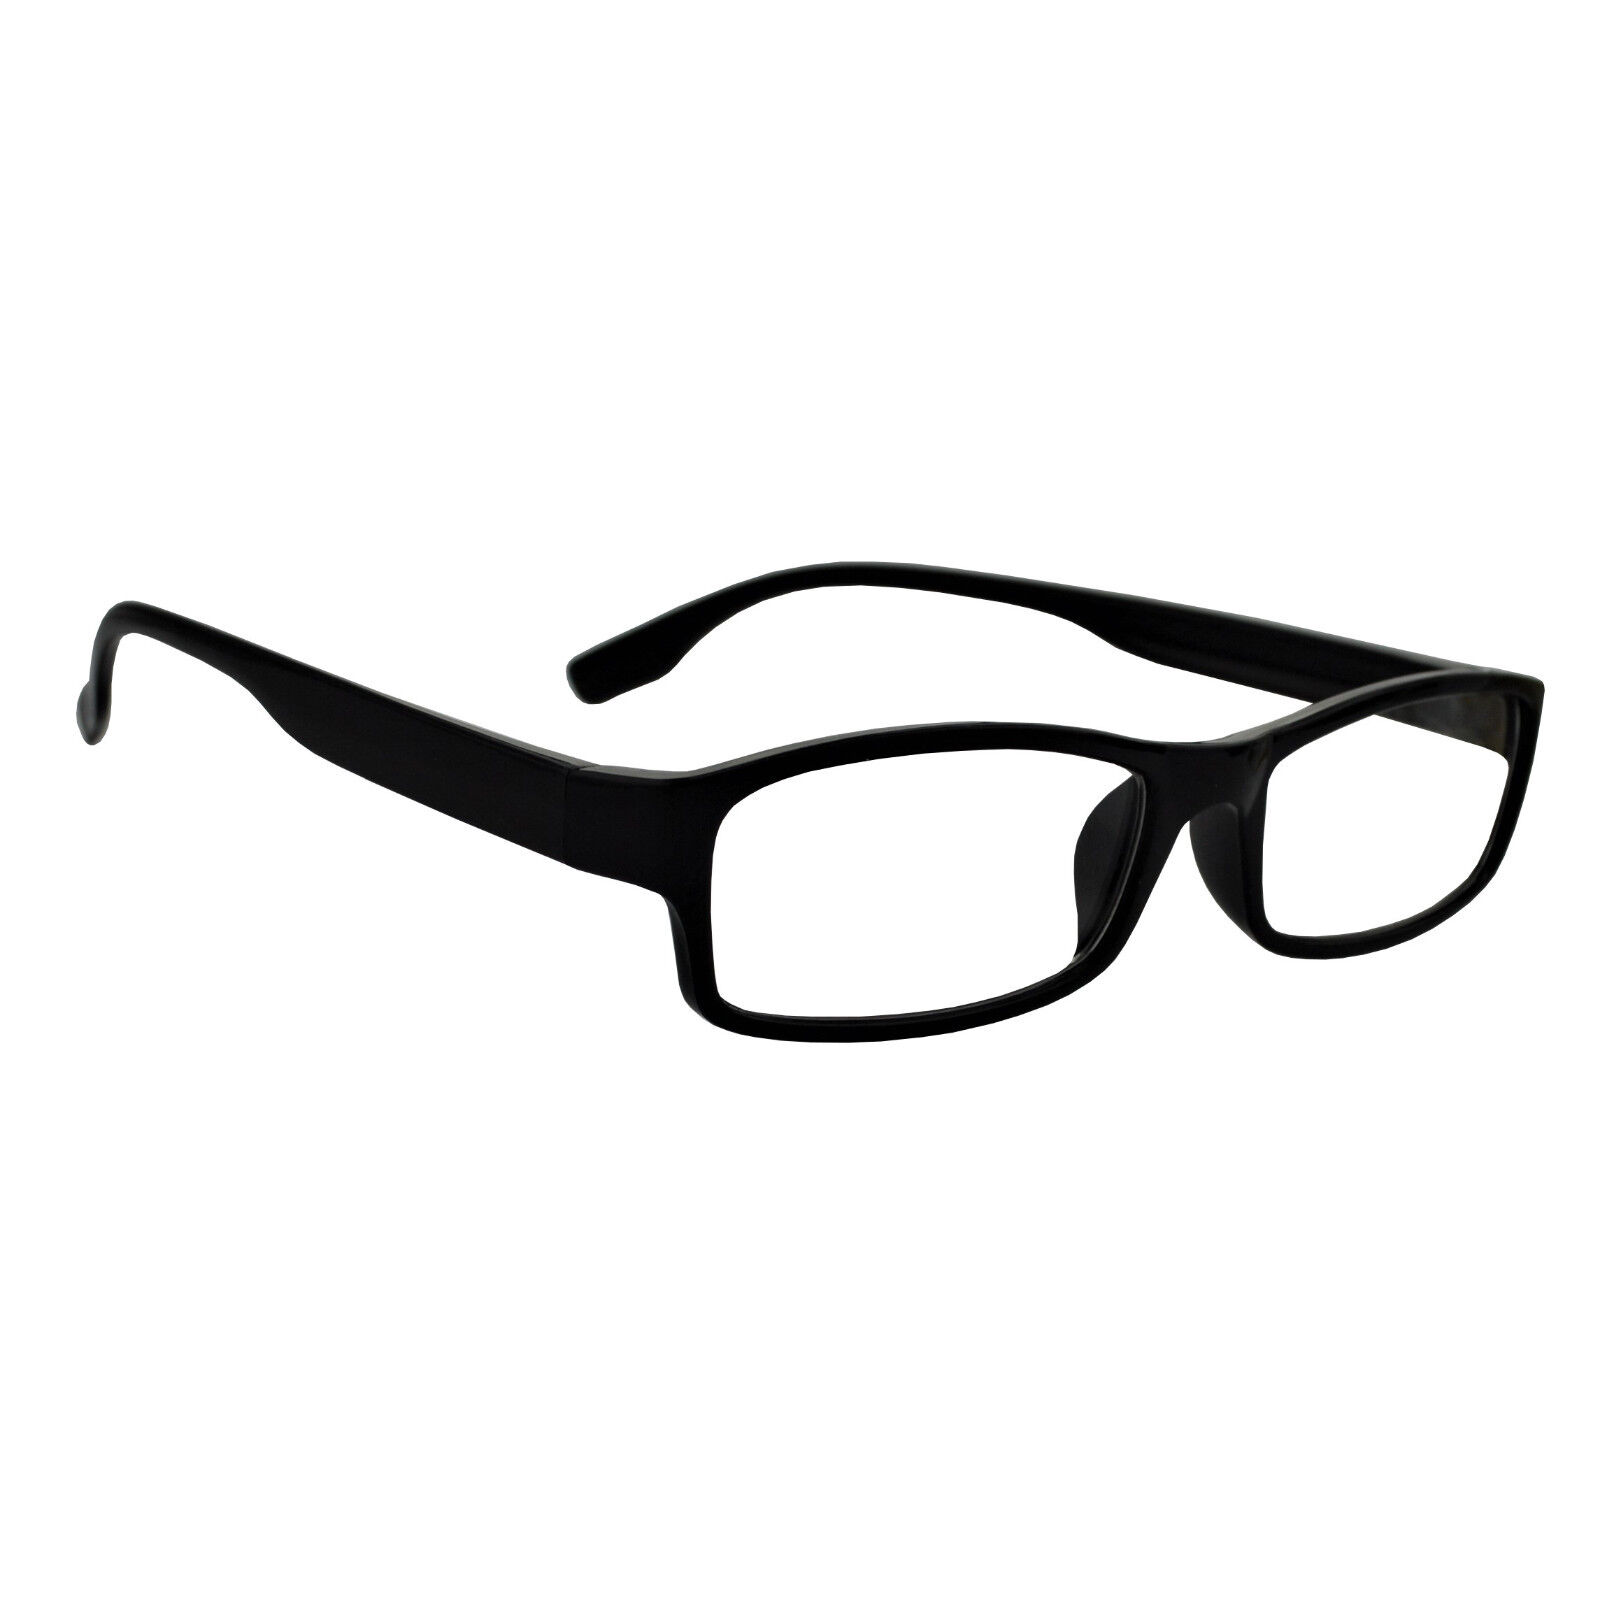 3er Set schwarze Herren Lesebrillen moderne Brille Kunststoff Rahmen 1,0 - 4,0 D